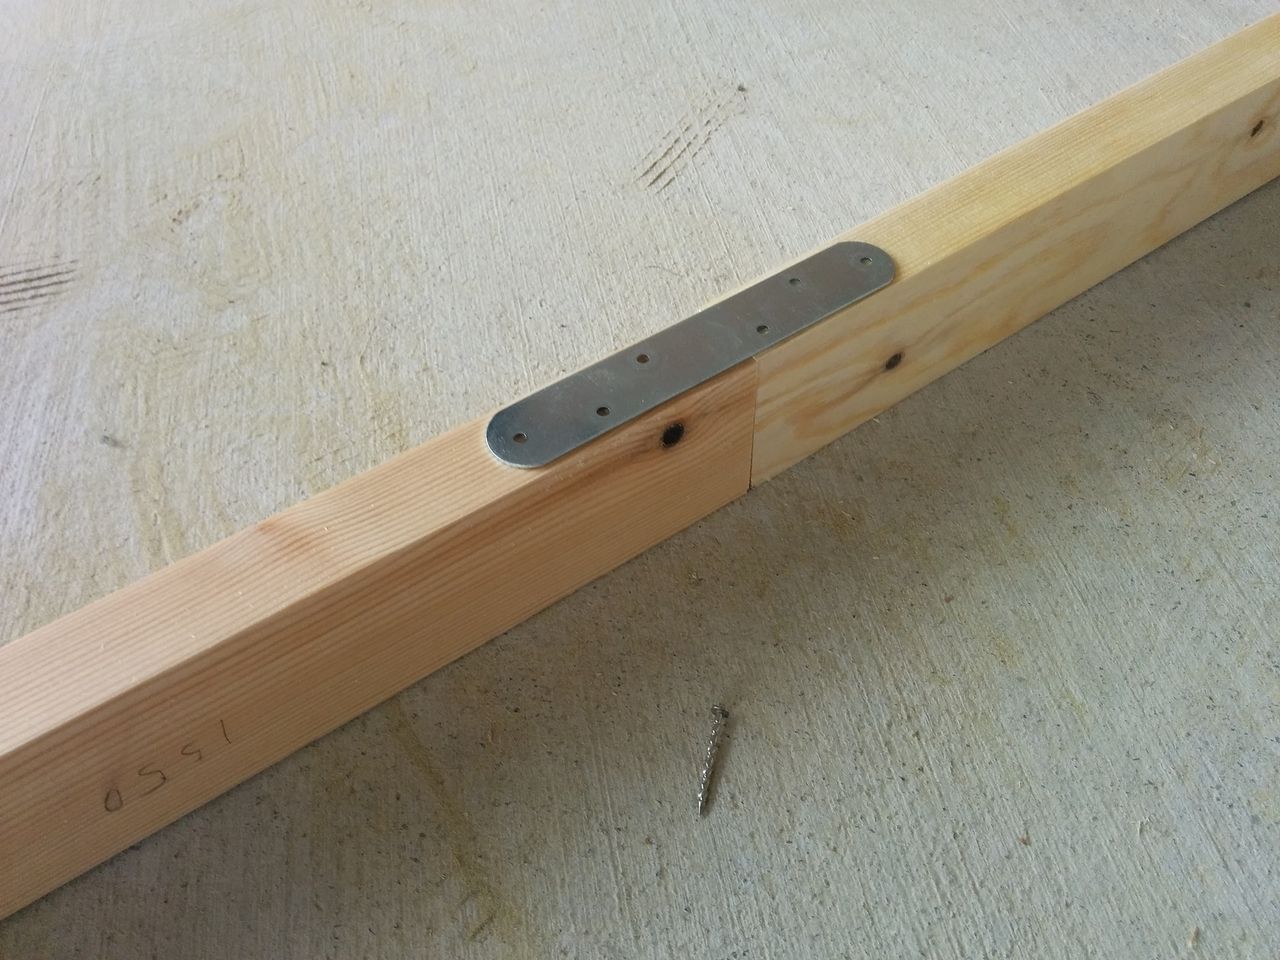 本当は桟木をジョイントせずに根太を組みたいところですが、材料の運搬などを考えた結果、一文字プレートを使ってジョイントすることにしました。
この一文字プレートをスクリュー釘を使って固定していきます。